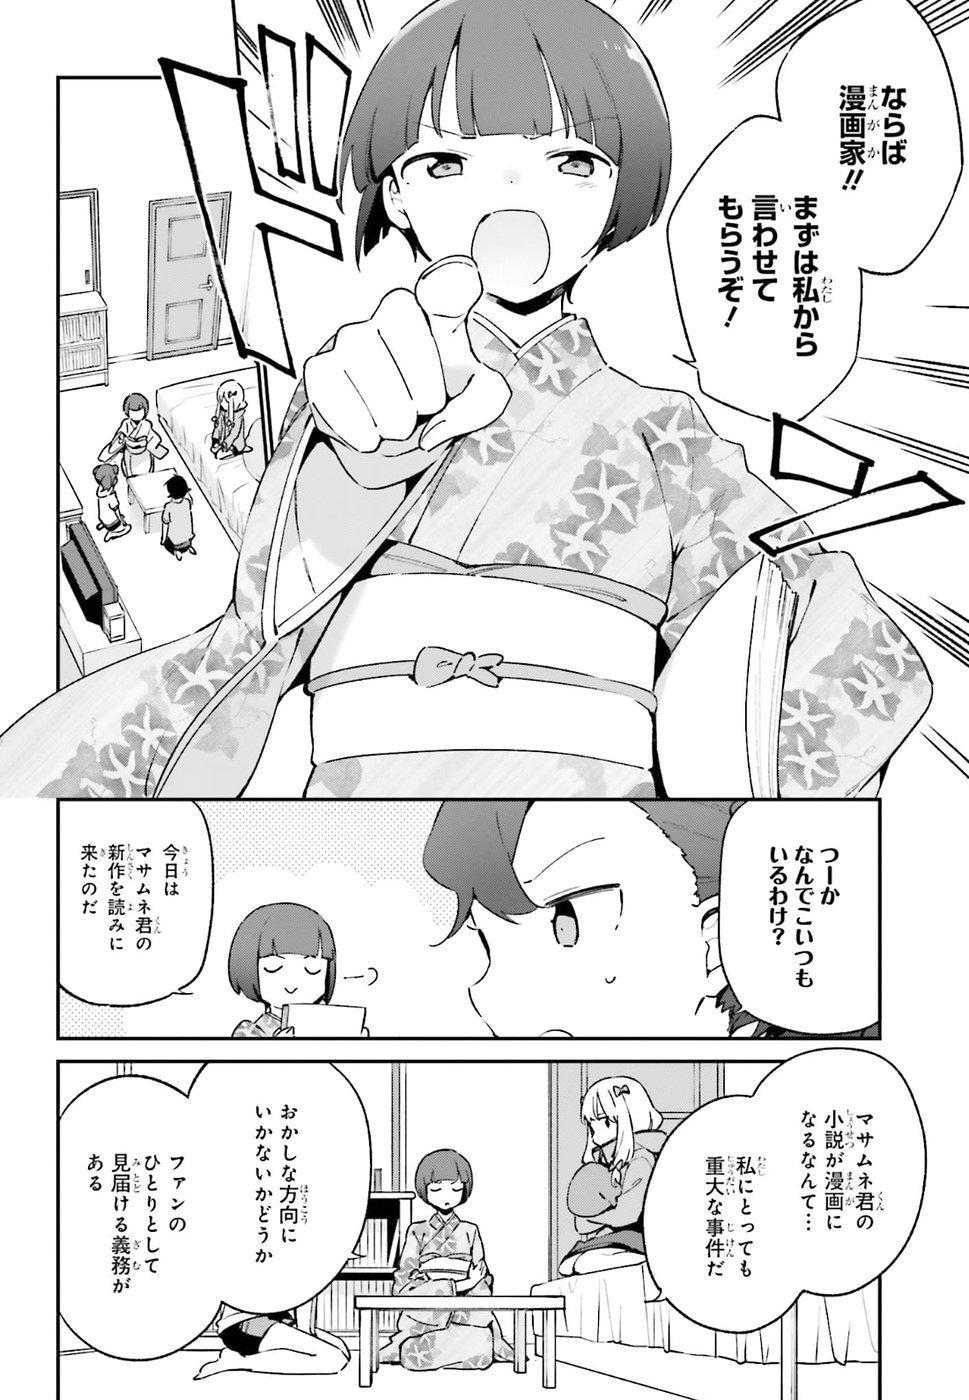 Ero Manga Sensei - Chapter 49 - Page 4